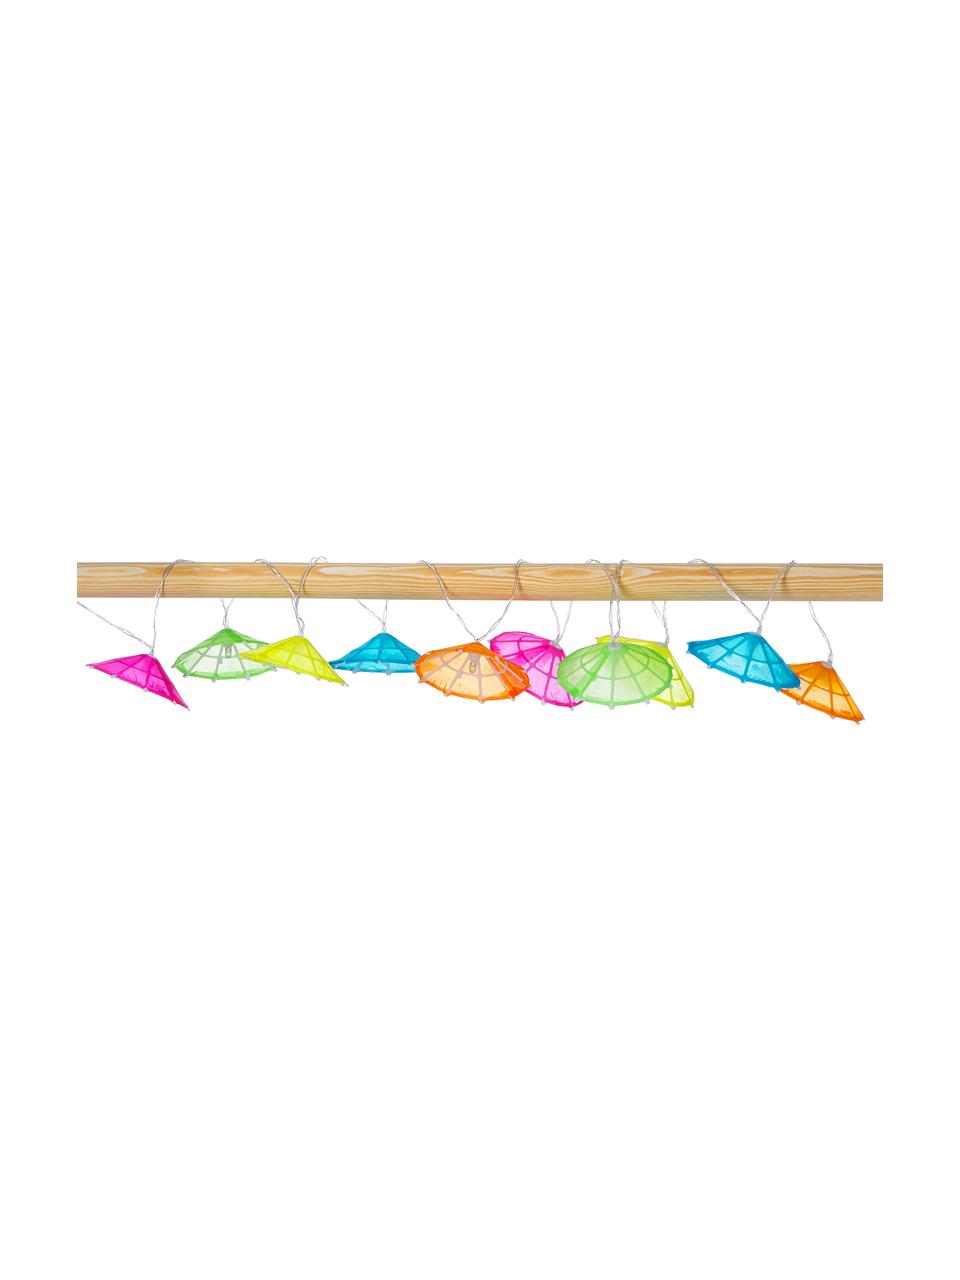 Světelný LED řetěz Umbrella, 165 cm, 10 lampionů, Více barev, D 165 cm